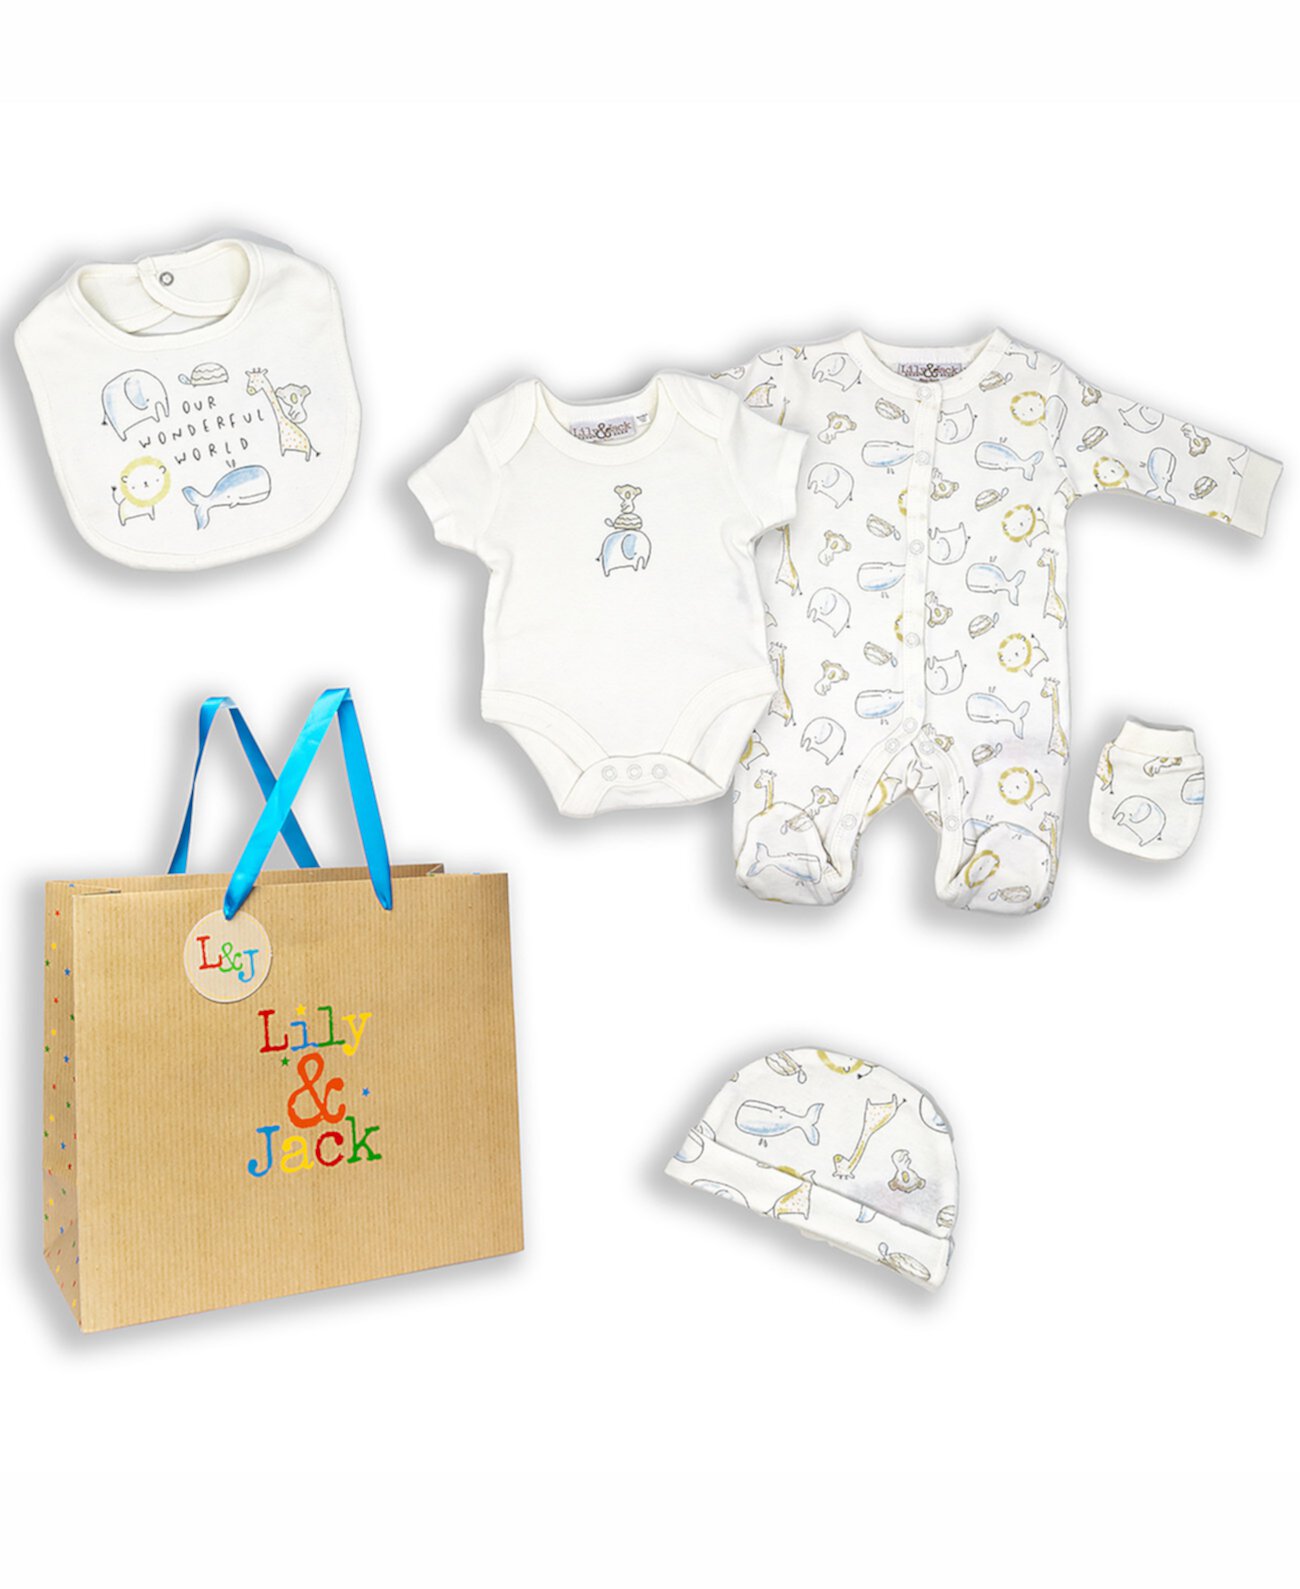 Подарочный набор для малышей Наш прекрасный мир на 5 предметов в подарочной сумке, Rock-A-Bye Baby Boutique, Унисекс, Детский Rock-A-Bye Baby Boutique